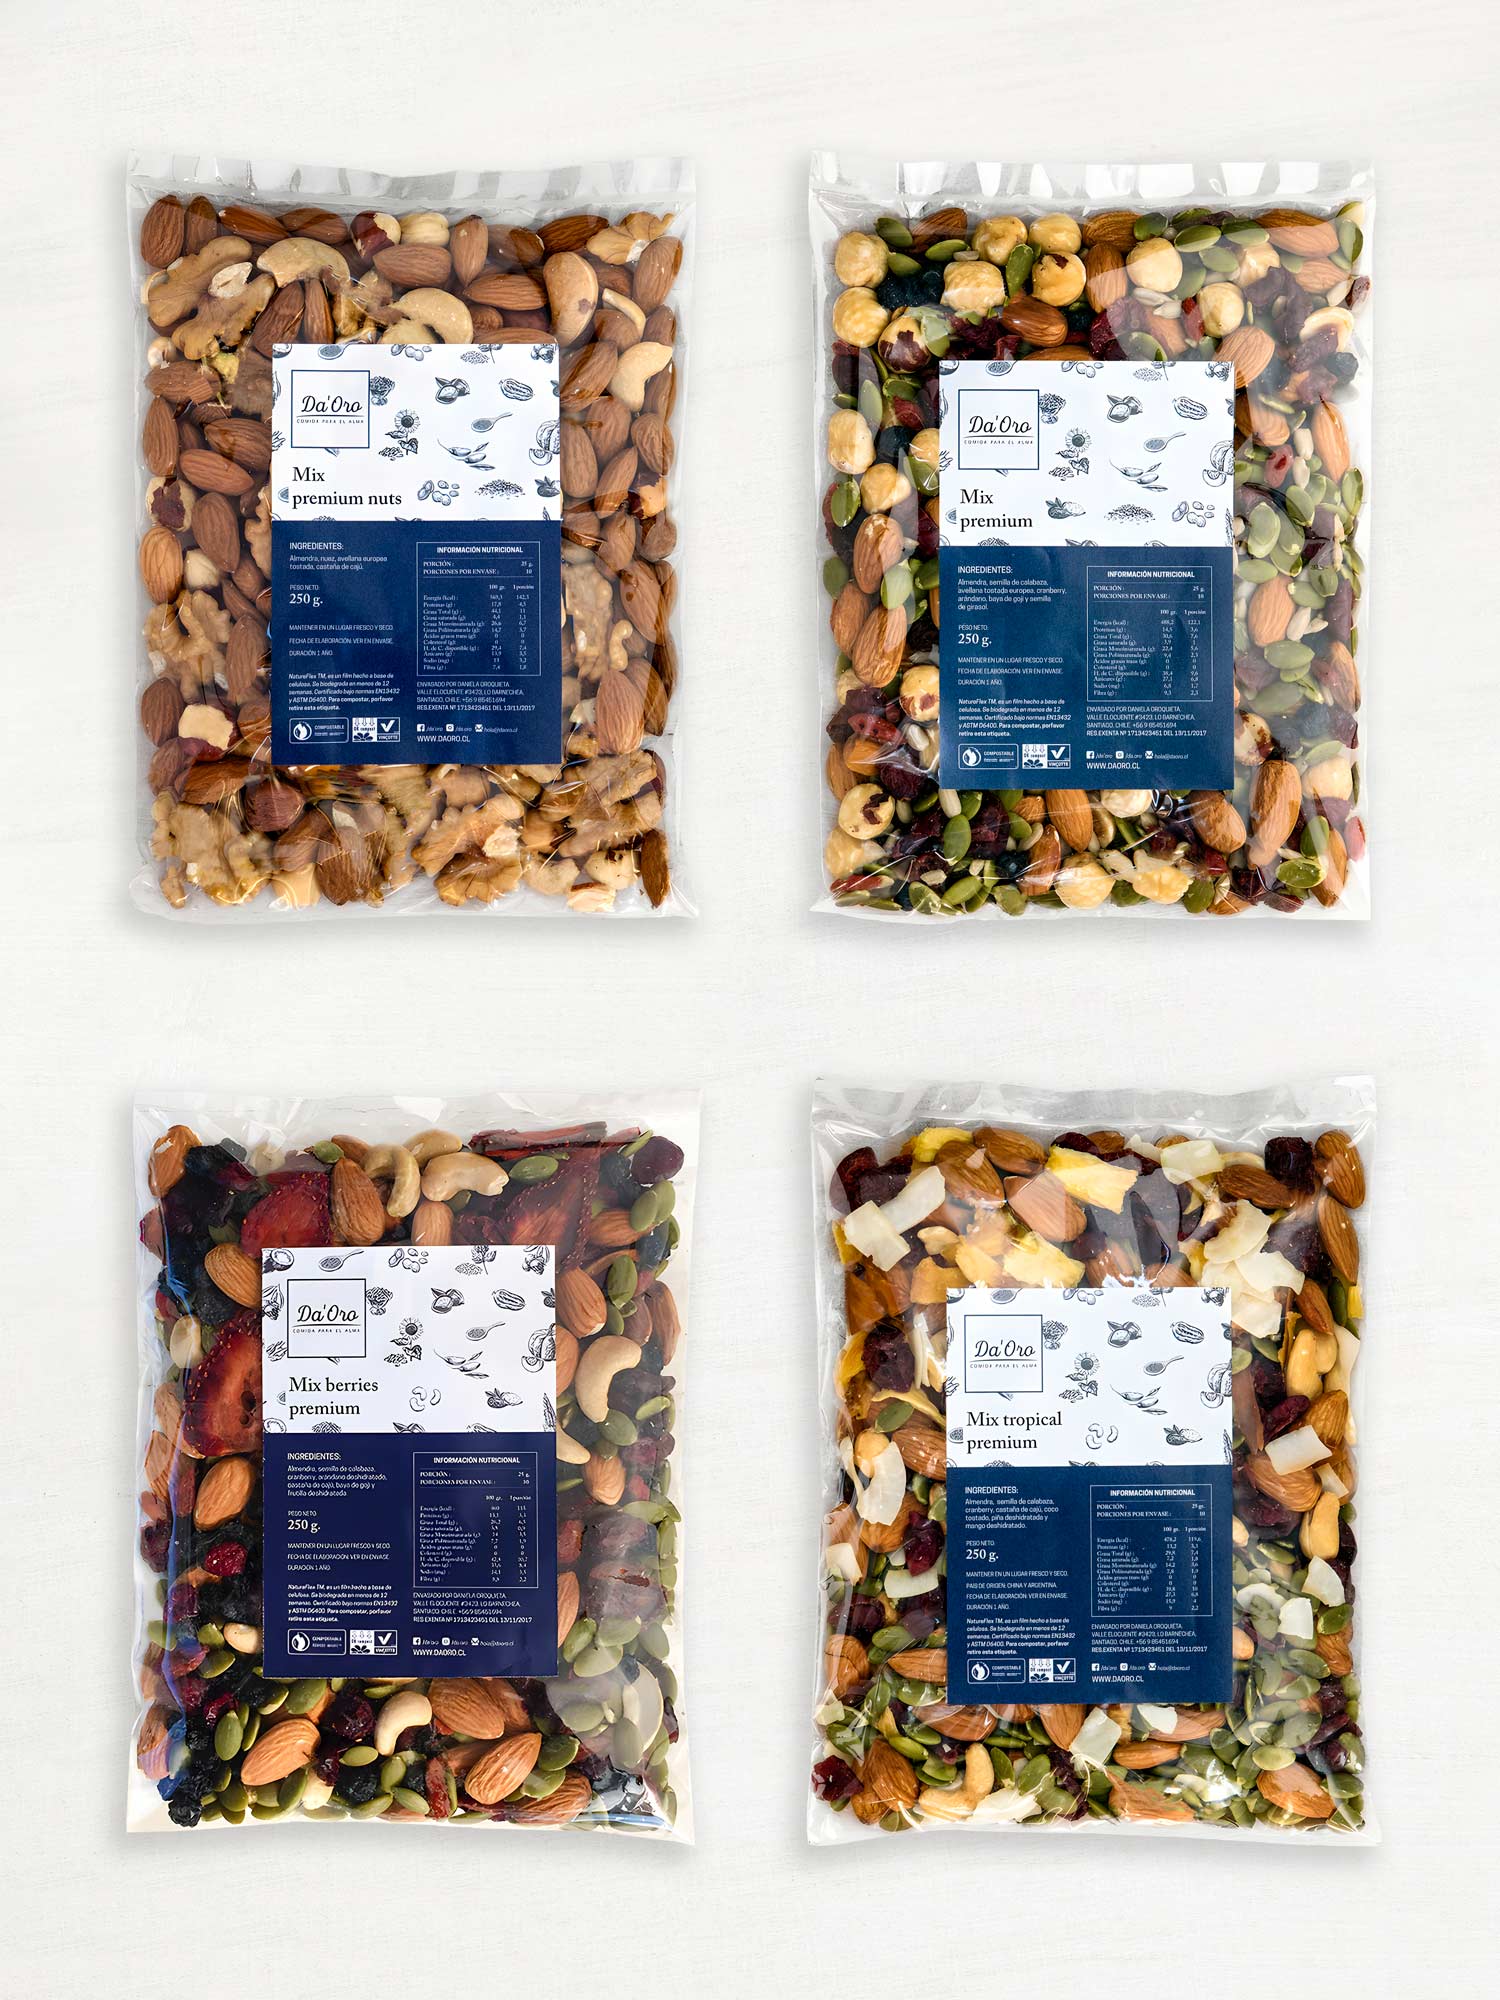 Cuatro bolsas transparentes con diferentes mezclas de frutos secos, semillas y frutas deshidratadas